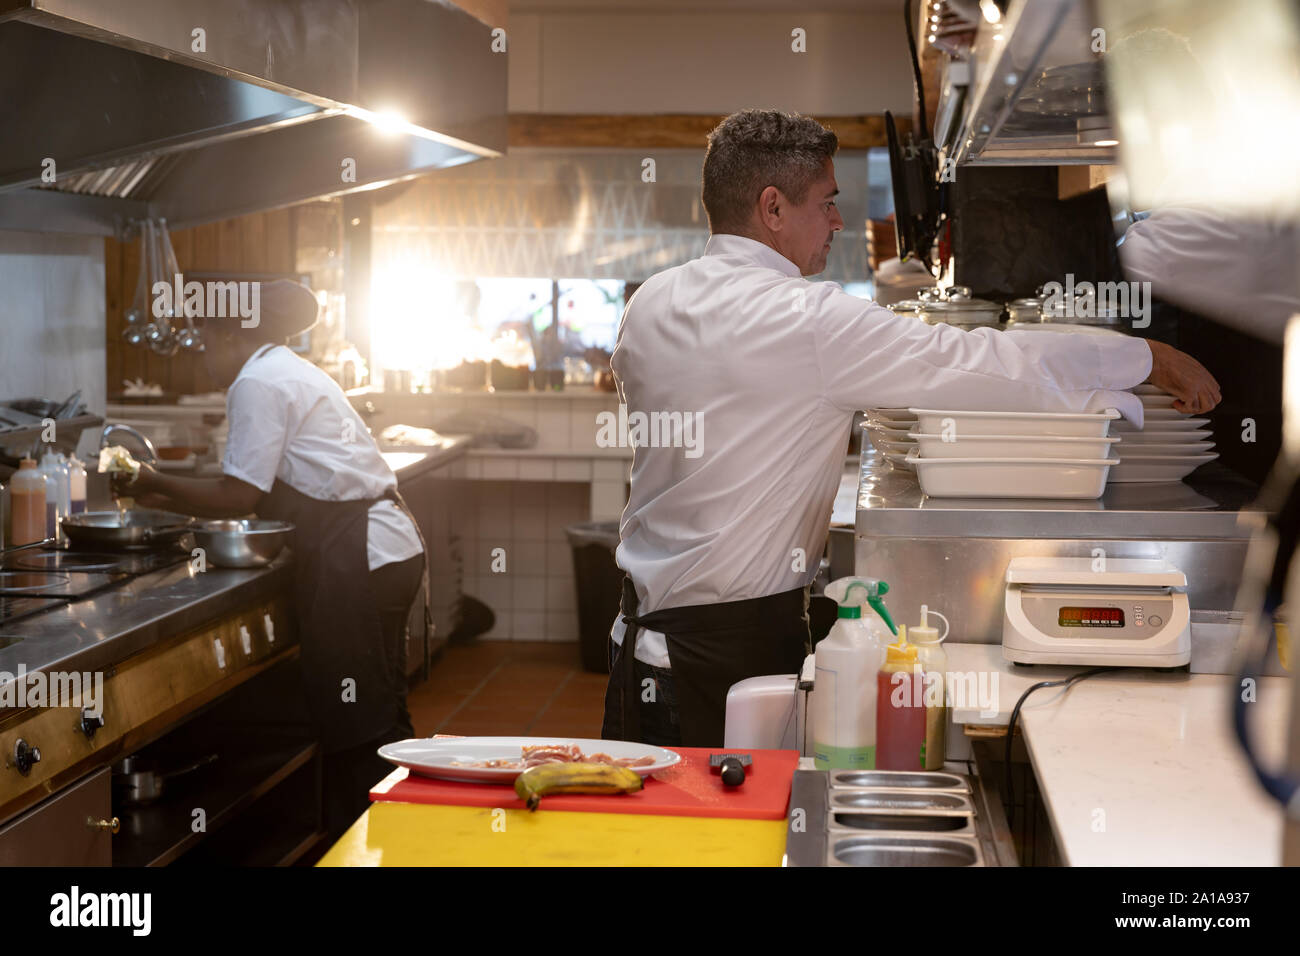 Chefs working in busy restaurant kitchen Stock Photo